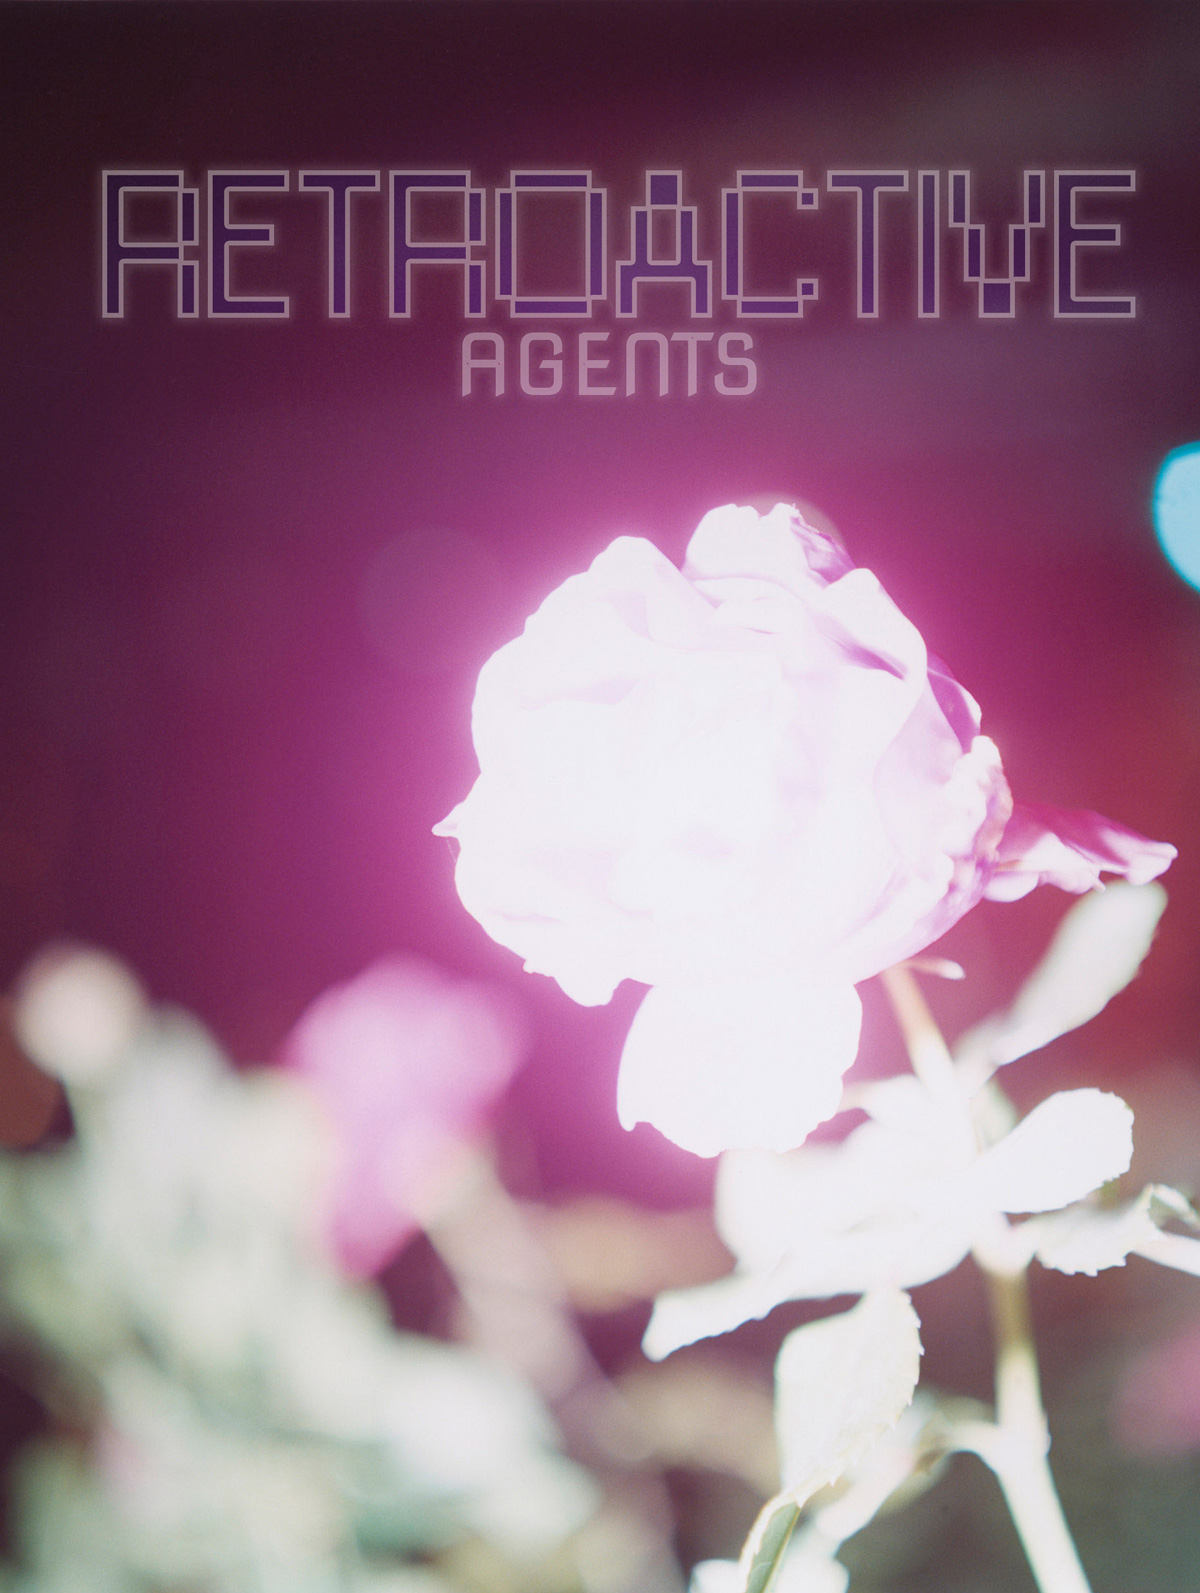 Retroactive Agents